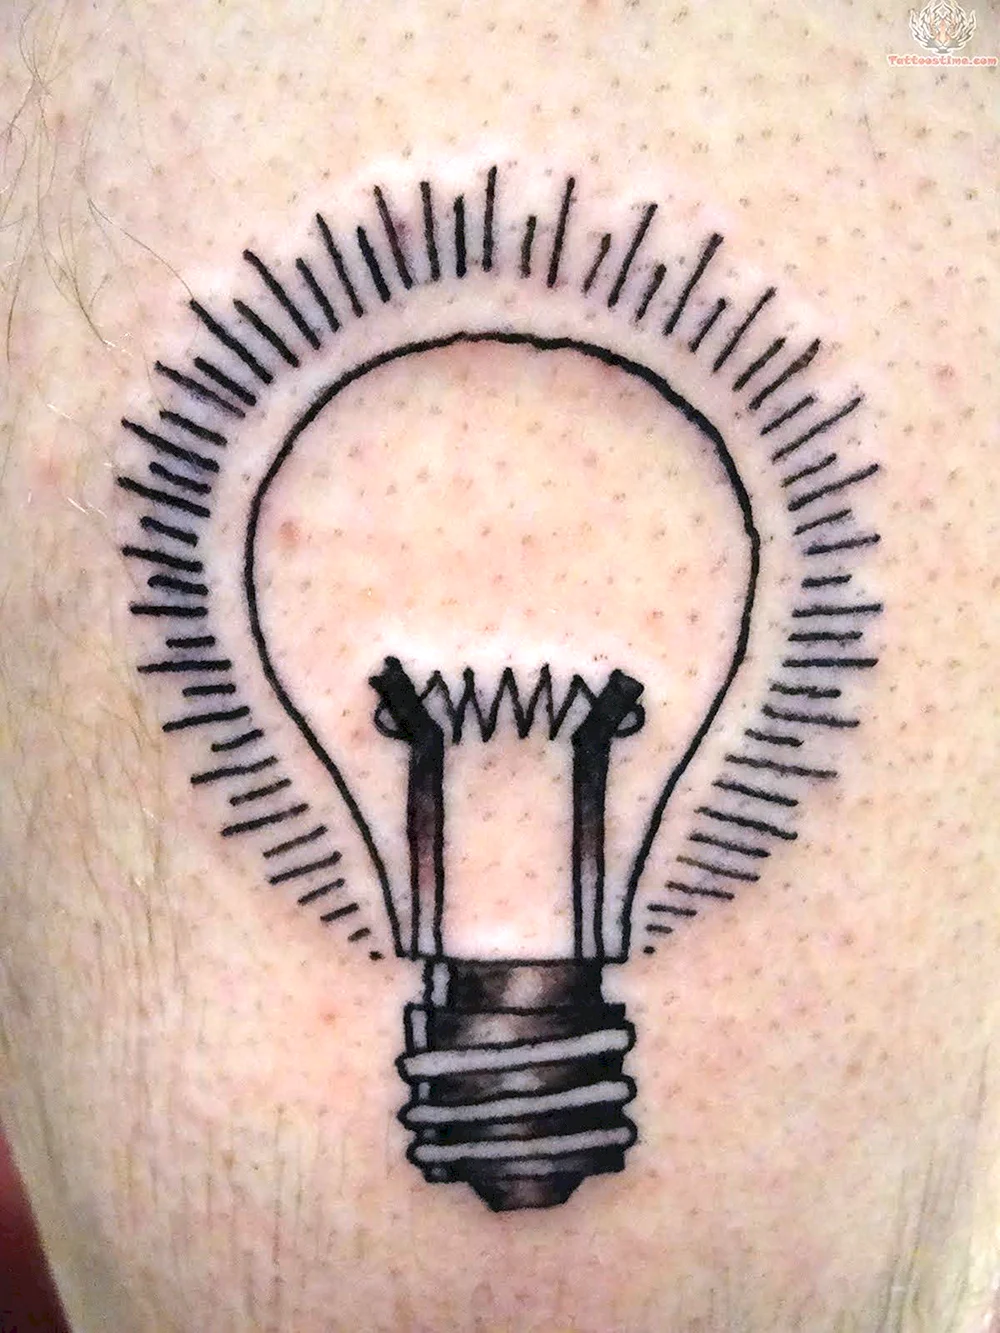 Light Bulb Tattoo